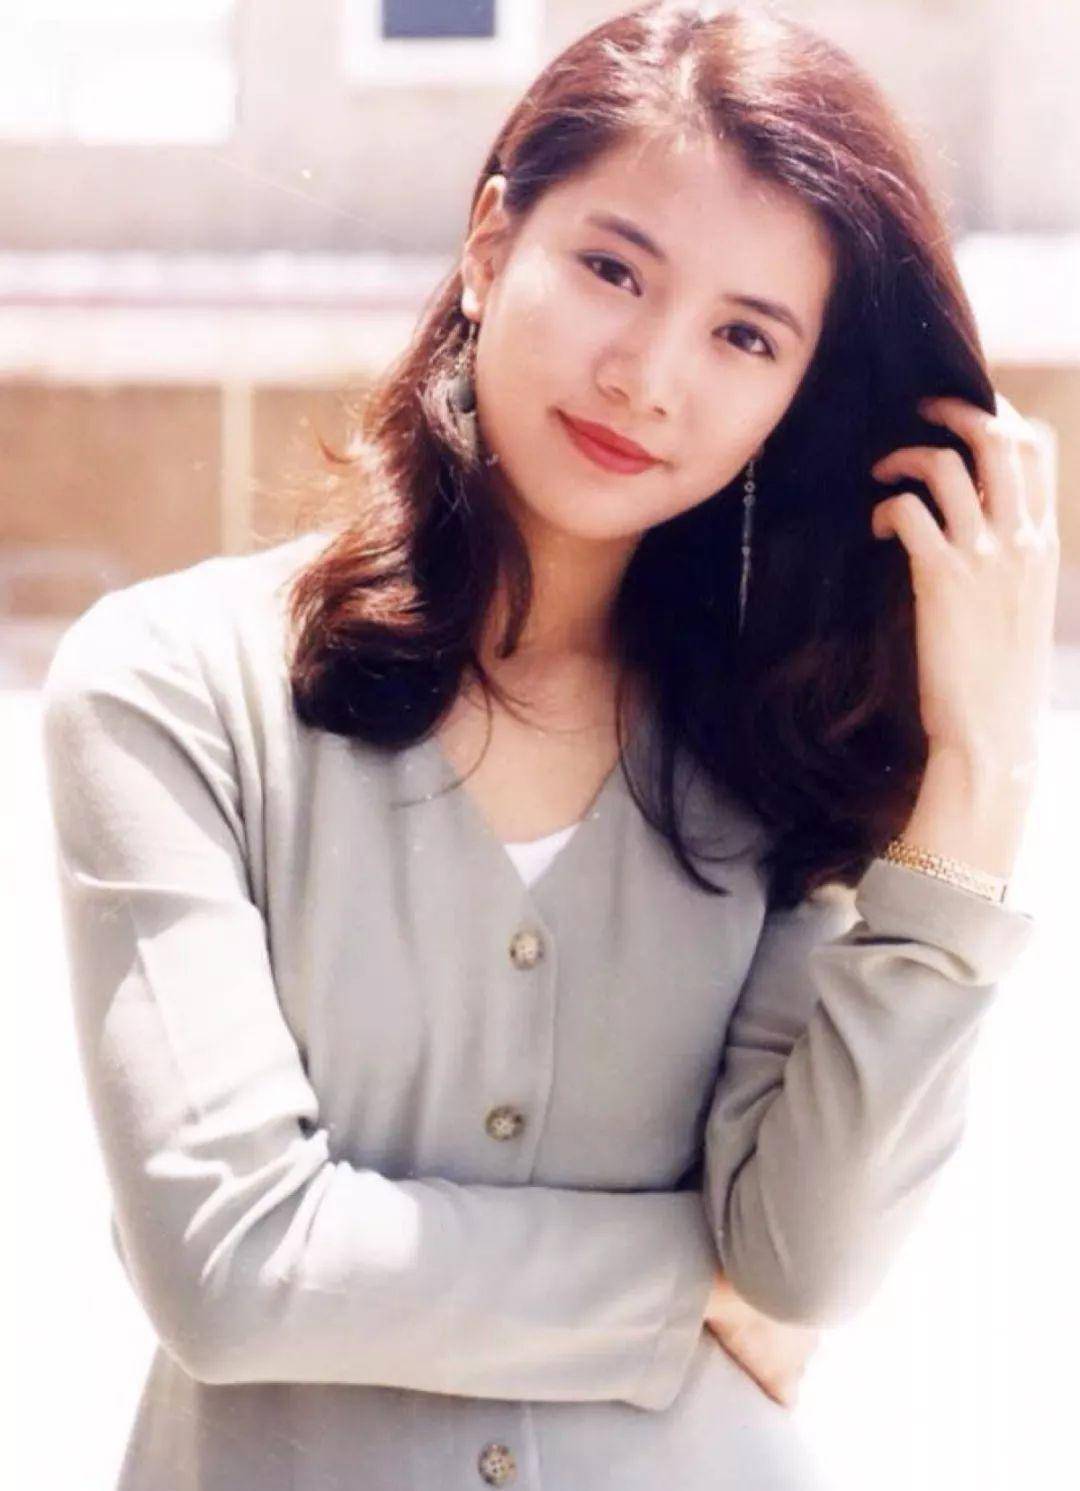 80年代香港的娱乐圈,女明星颜值都是爆表的,你更喜欢哪位呢